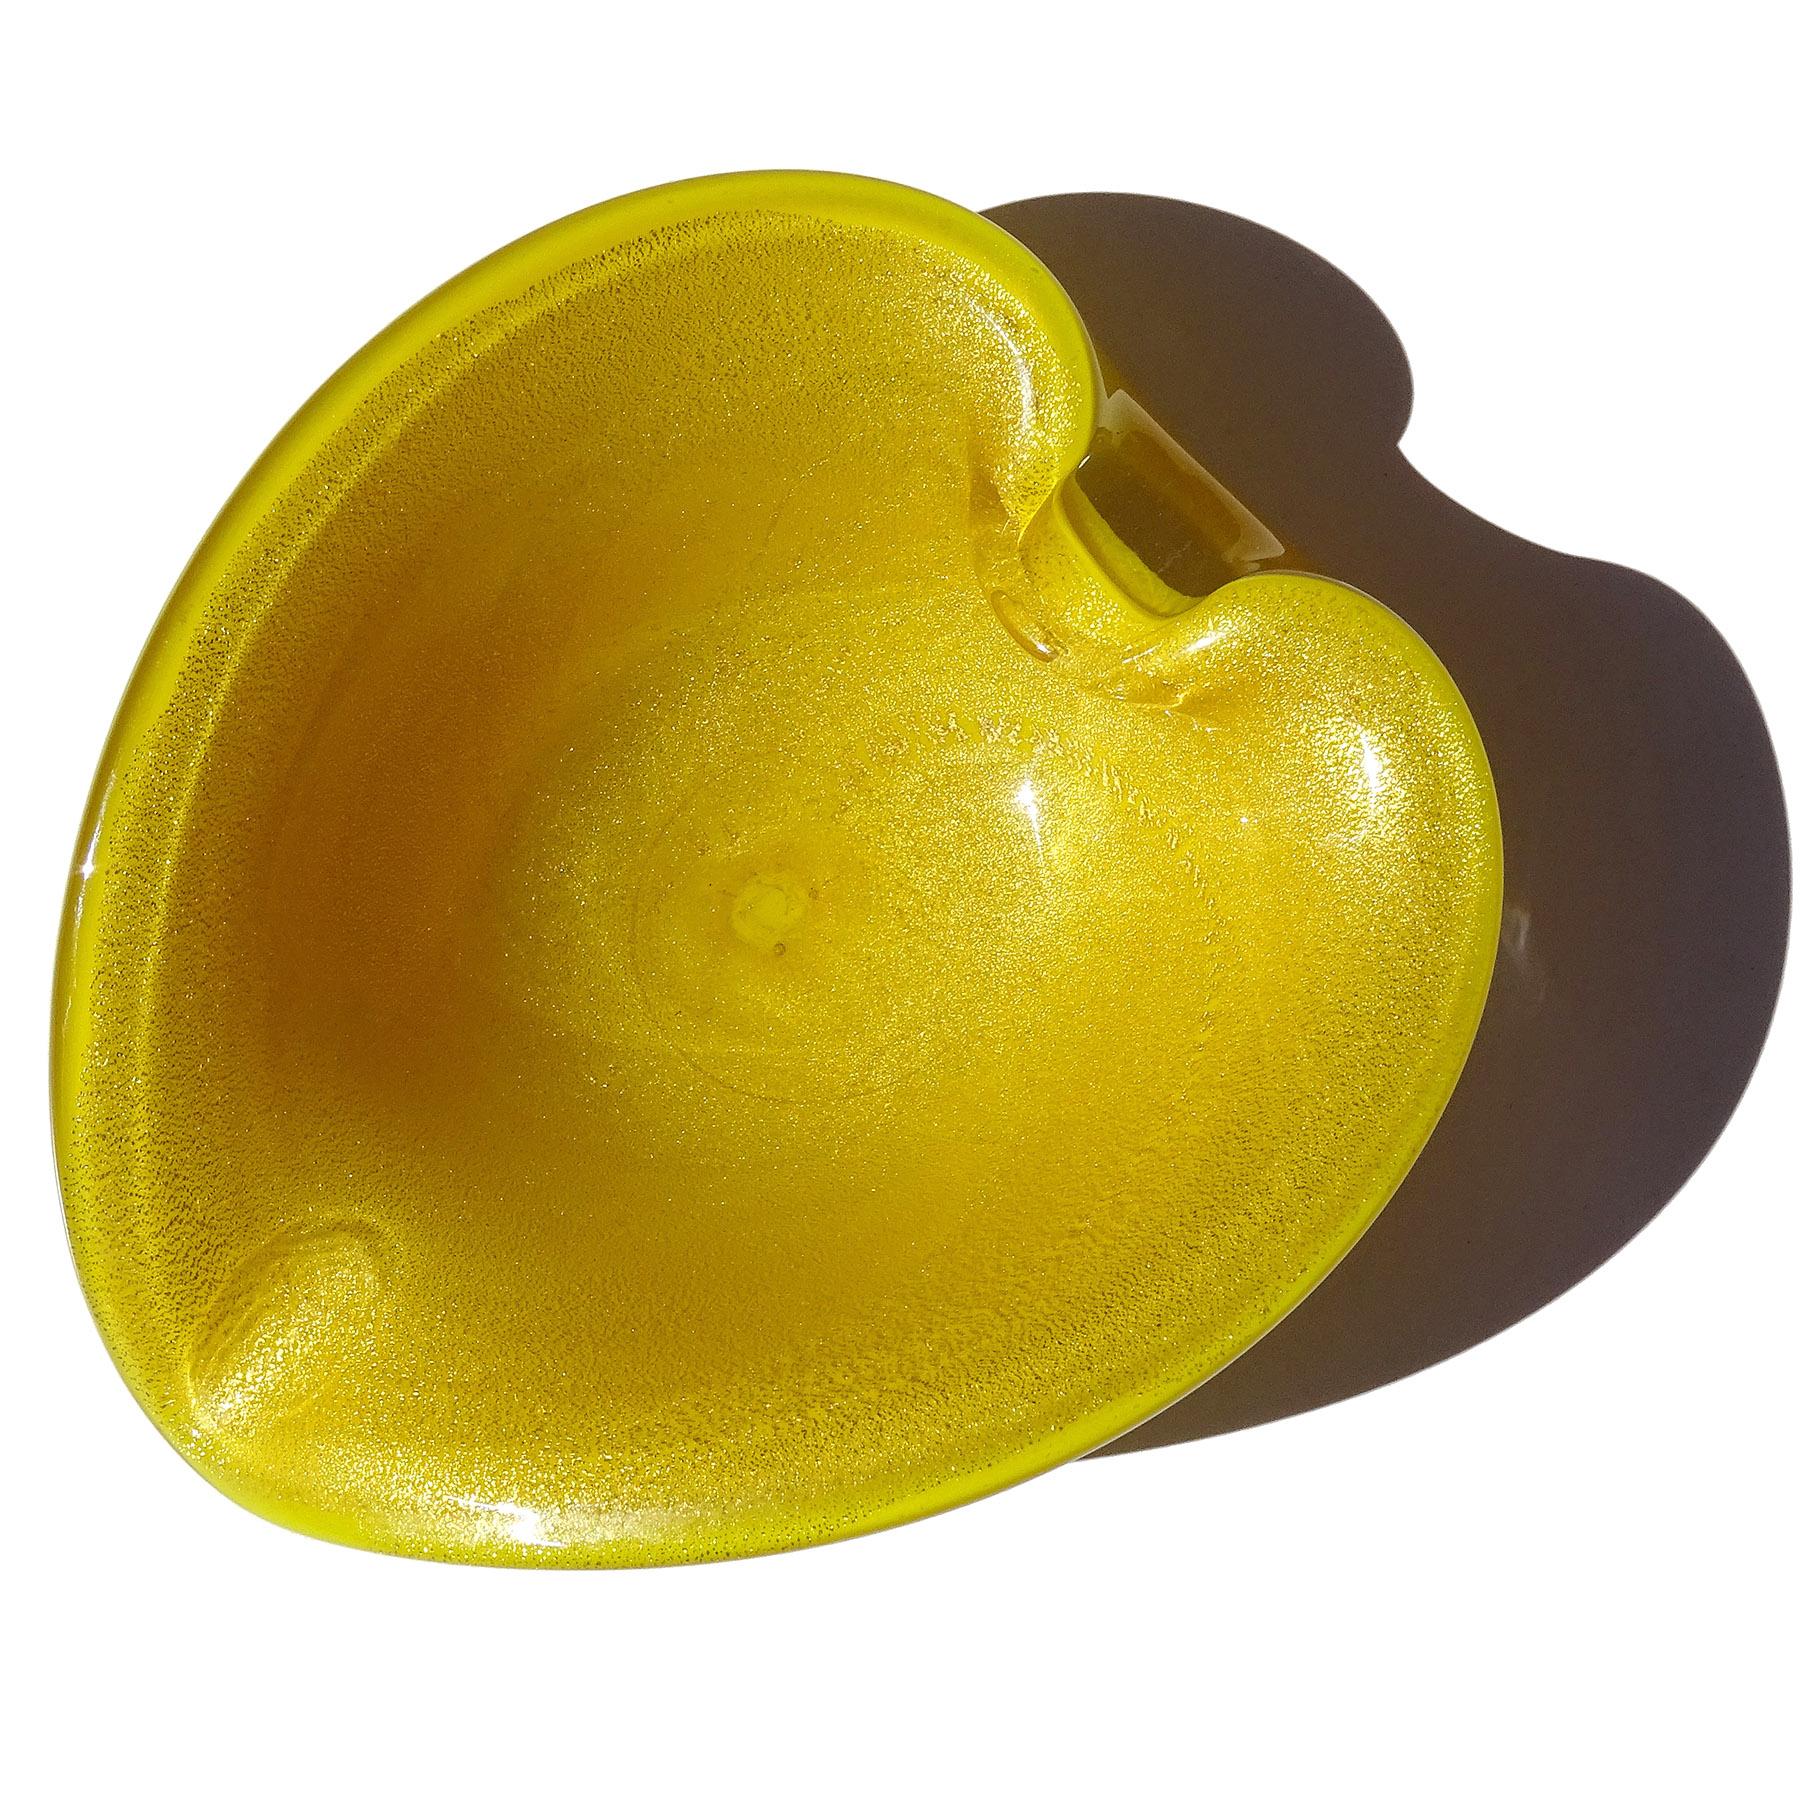 Schöne Vintage Murano mundgeblasenen hellen gelben und goldenen Flecken italienische Kunstglas herzförmige Schale / vide poche. Wird dem Designer Alfredo Barbini zugeschrieben. Die Schale habe ich in einem goldenen Sonnenblumengelb angefertigt und